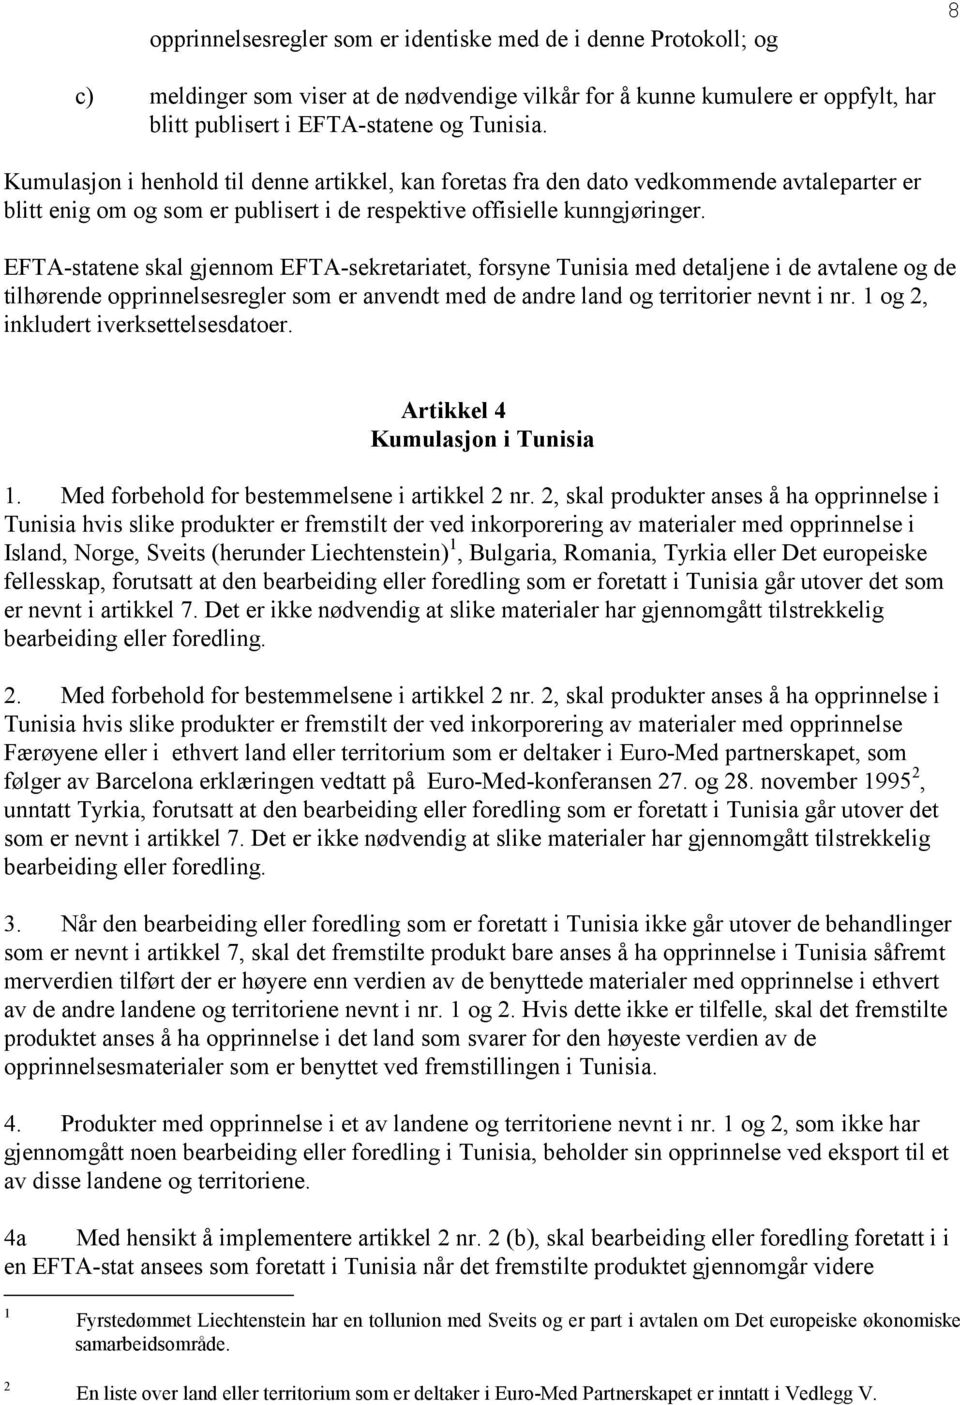 EFTA-statene skal gjennom EFTA-sekretariatet, forsyne Tunisia med detaljene i de avtalene og de tilhørende opprinnelsesregler som er anvendt med de andre land og territorier nevnt i nr.